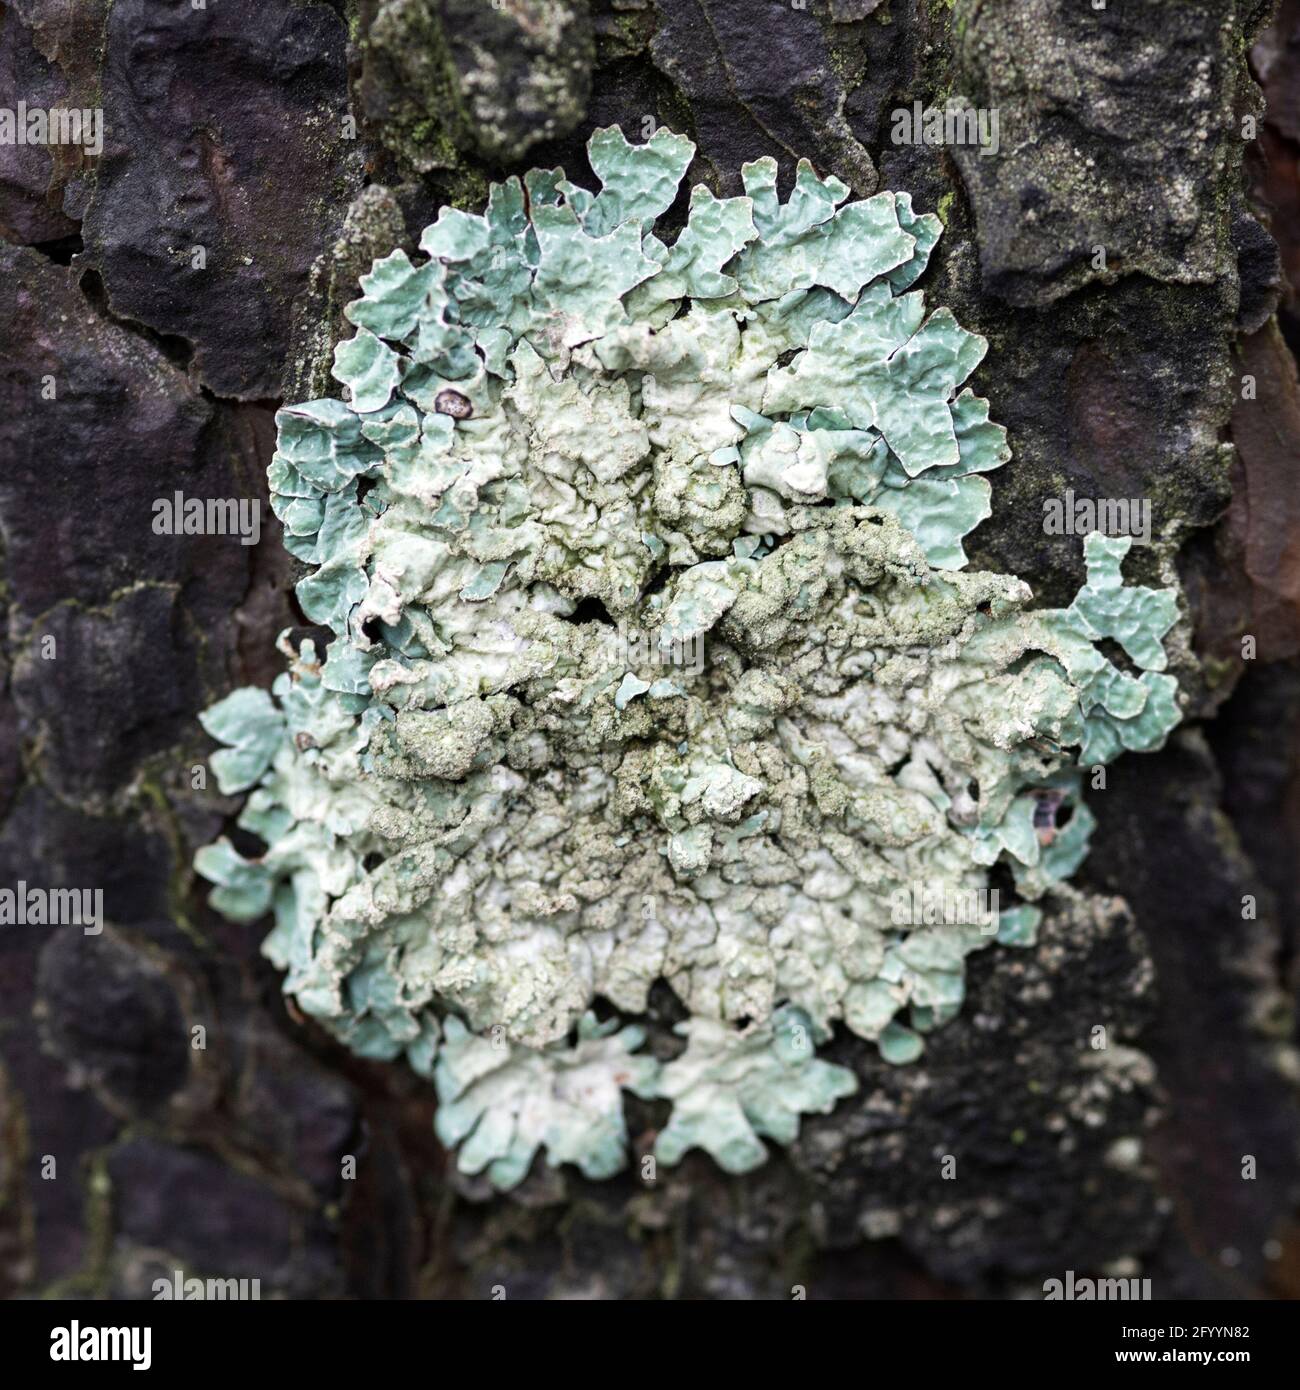 Lichen Flavoparmelia caperata on pine bark, macro Stock Photo